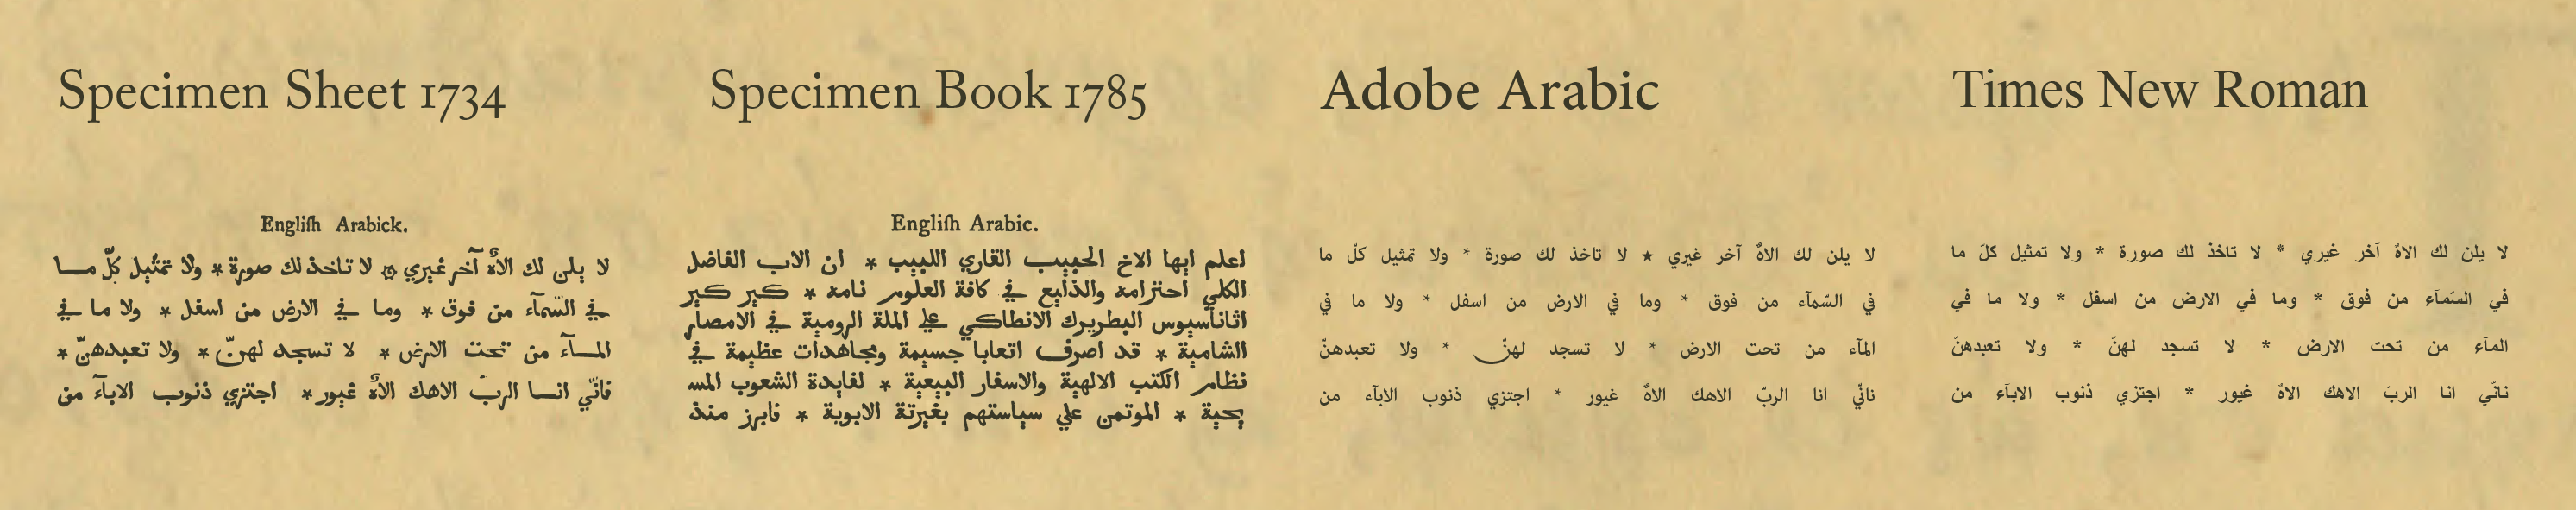 Caslon Arabic vs Adobe Arabic and Times New Roman.